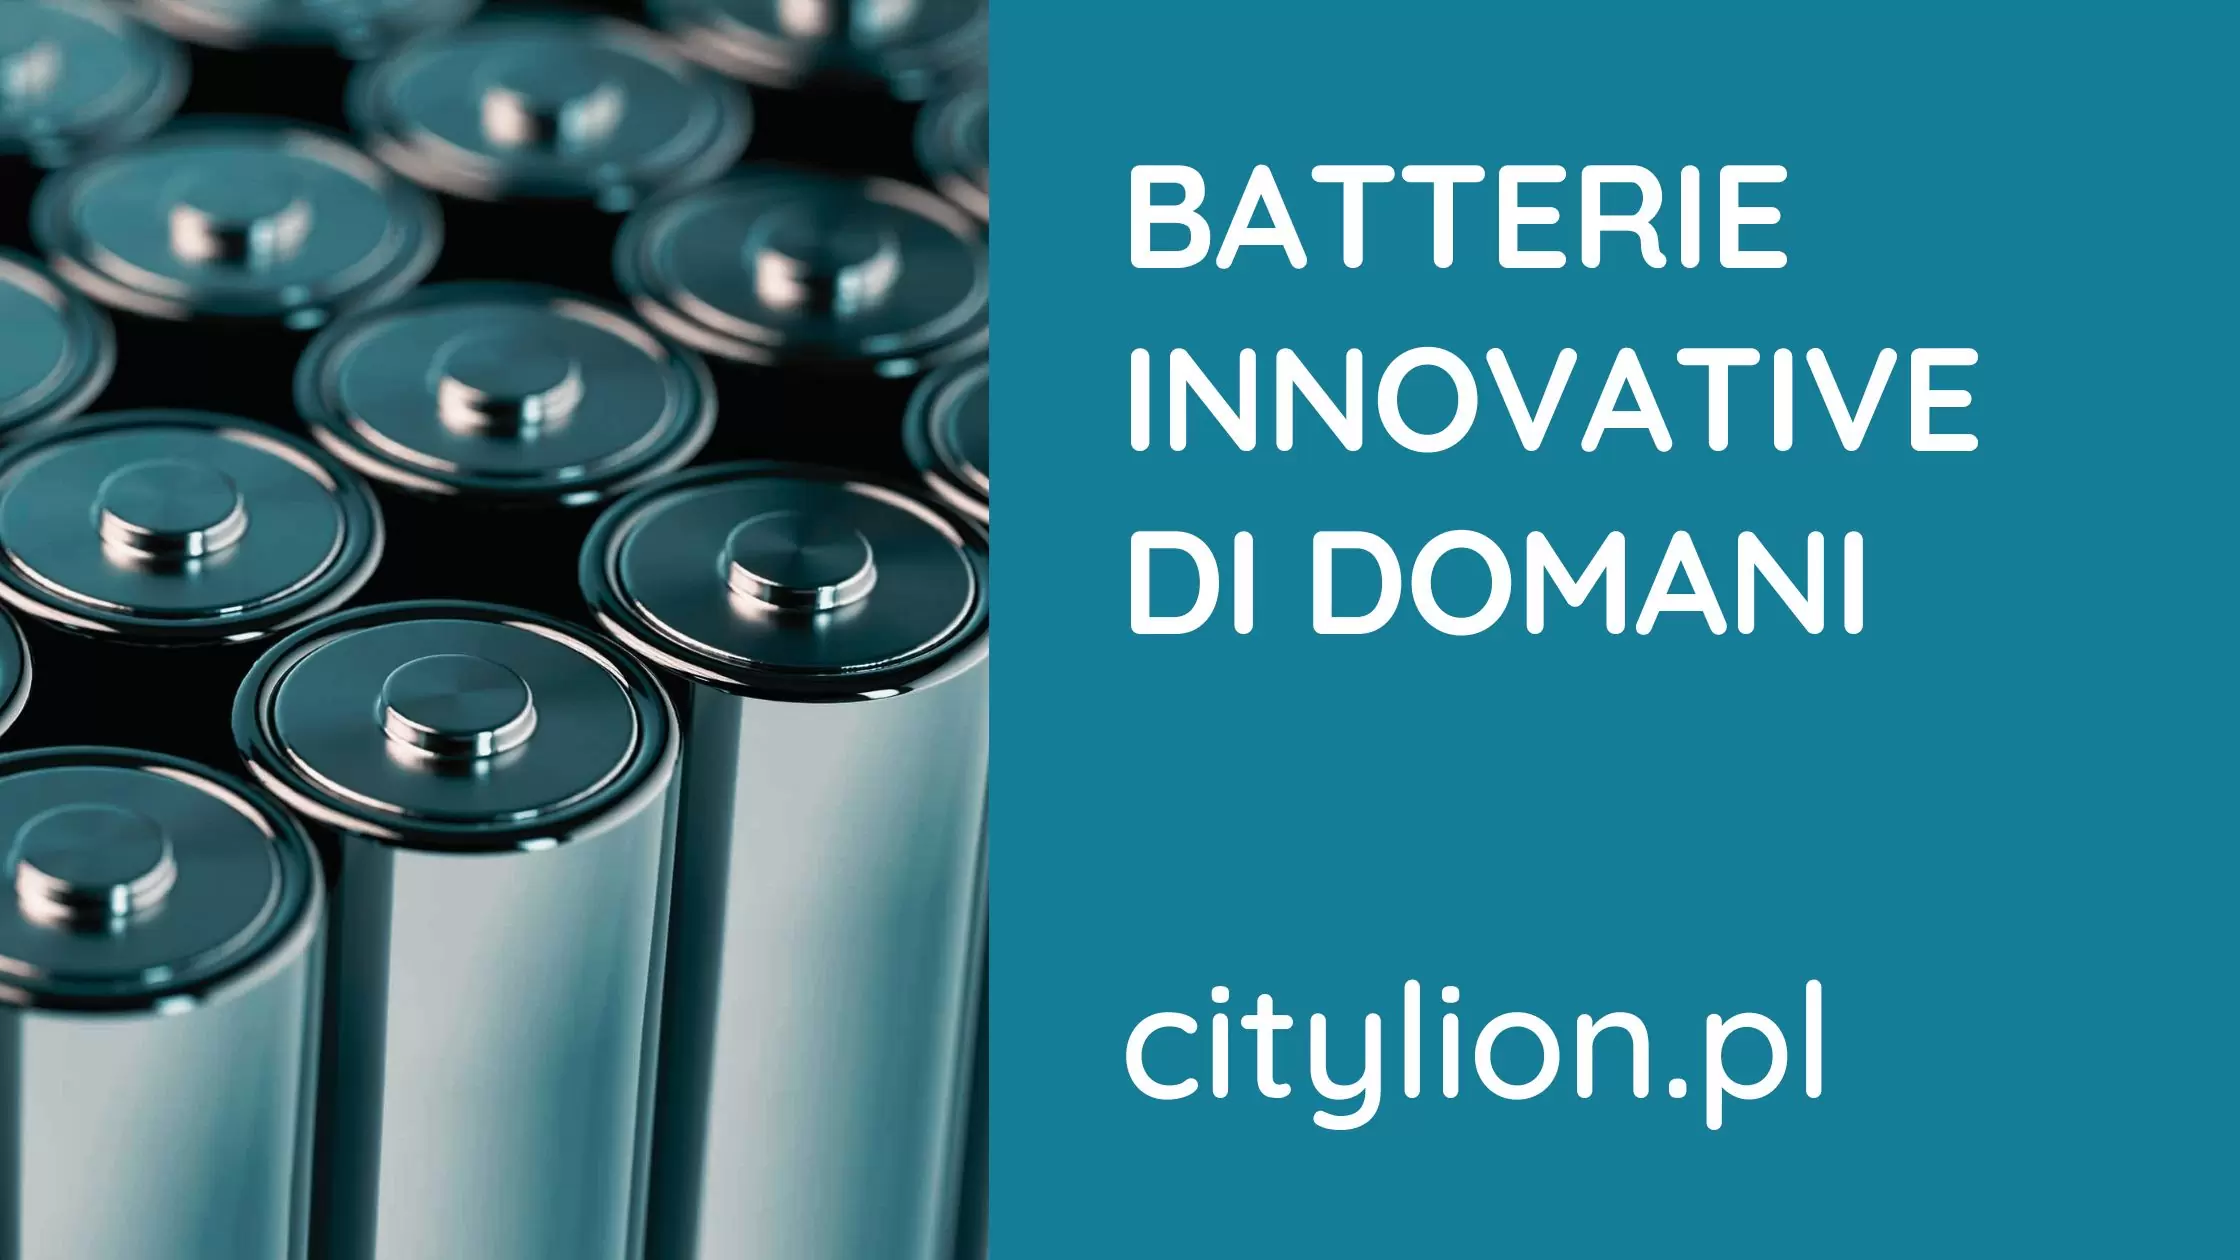 Batterie-Innovative-Di-Domani